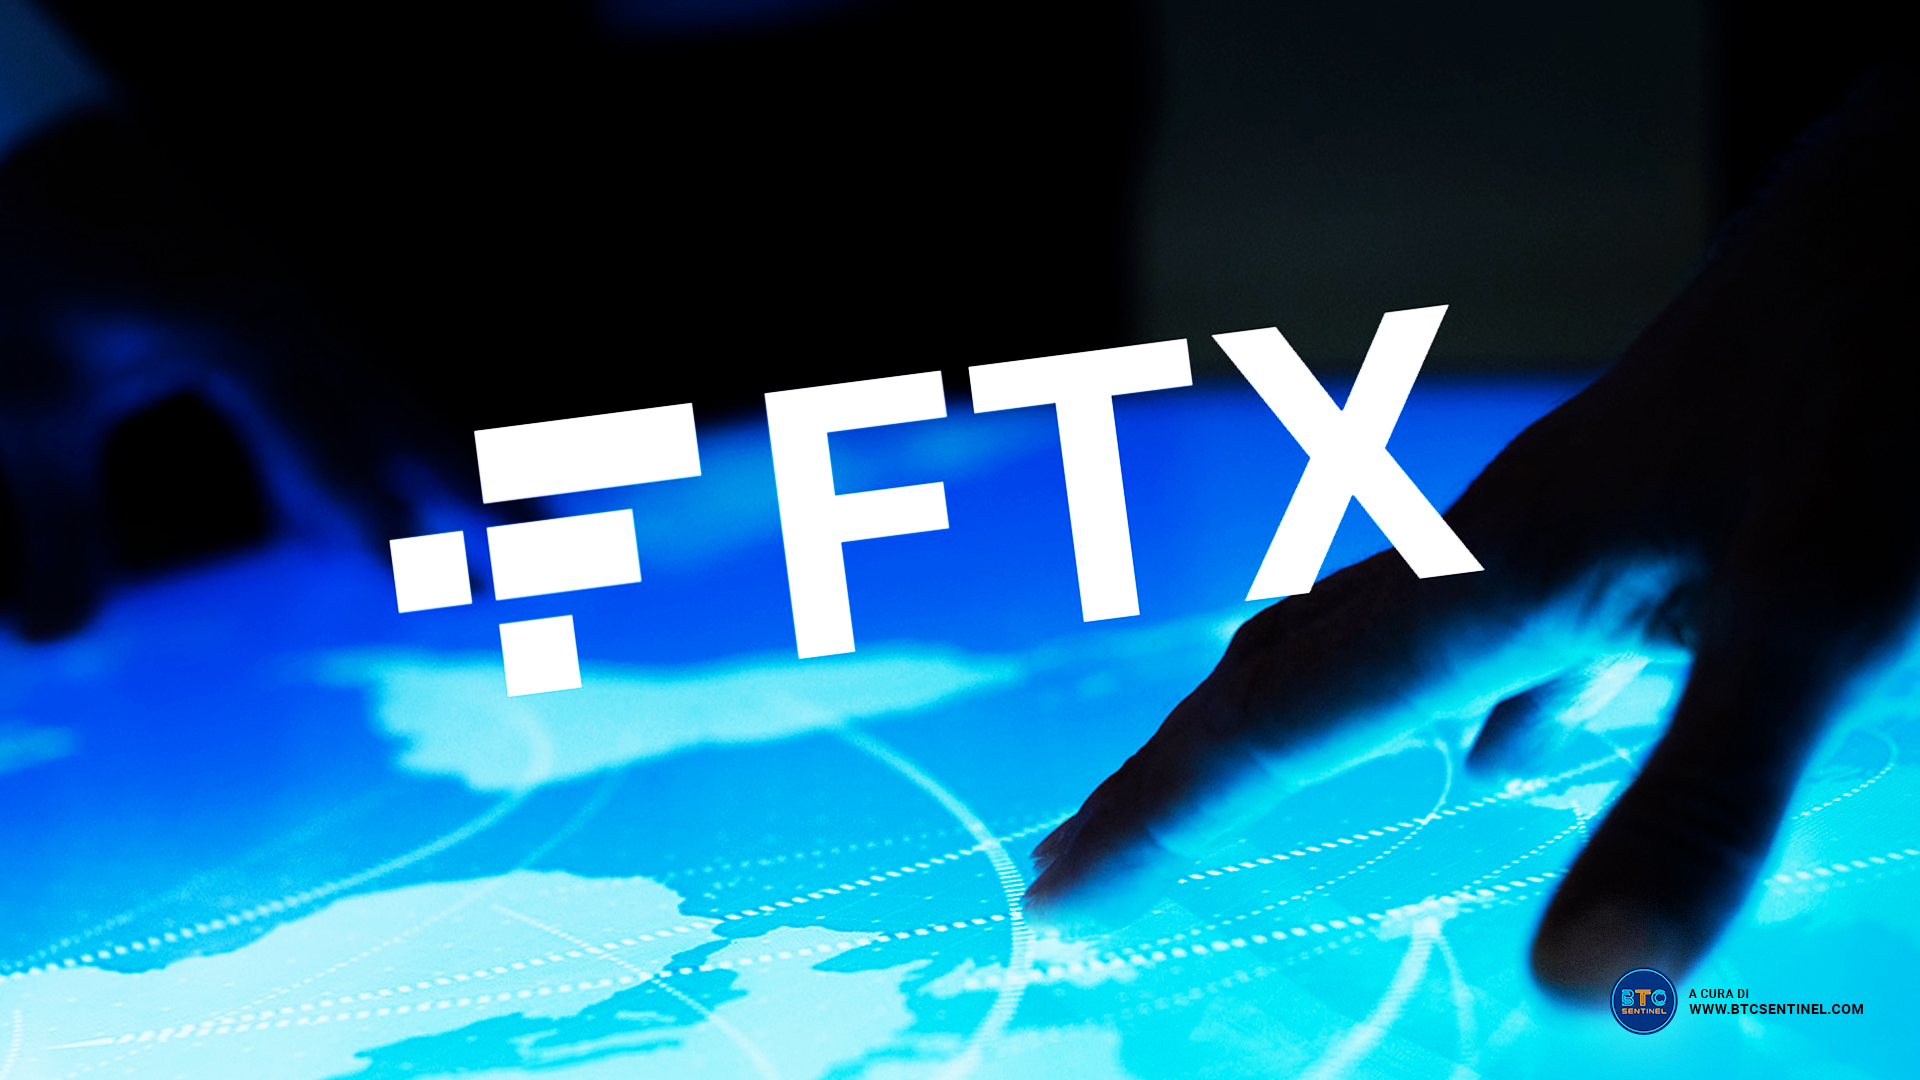 L'exchange FTX ottiene il via libera per operare a Dubai